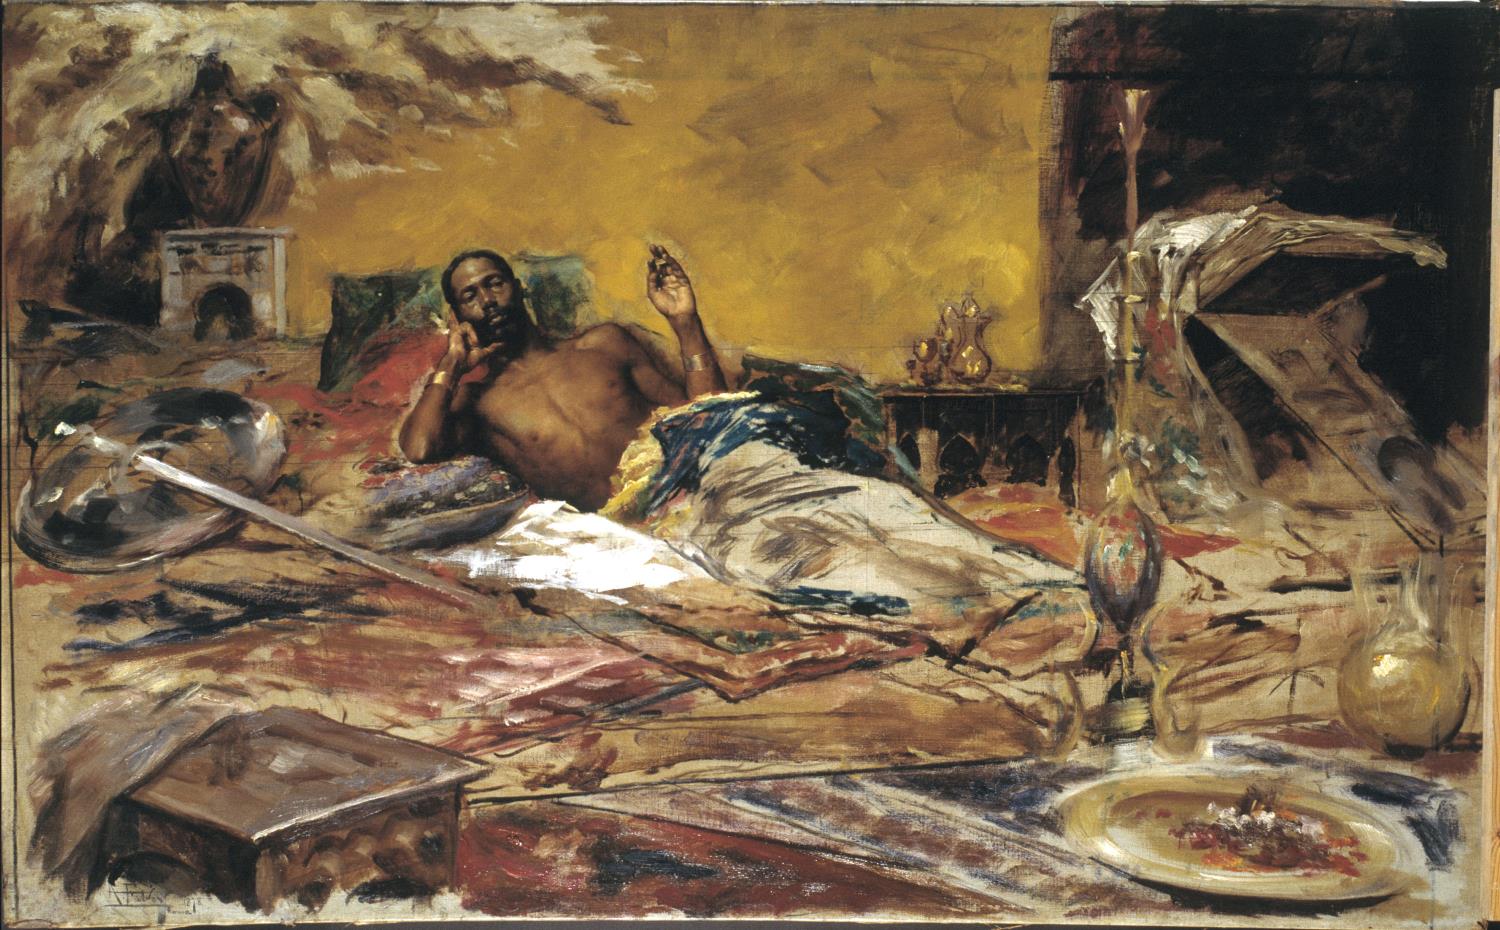 Antoni Fabrés, Descanso del guerrero, 1878